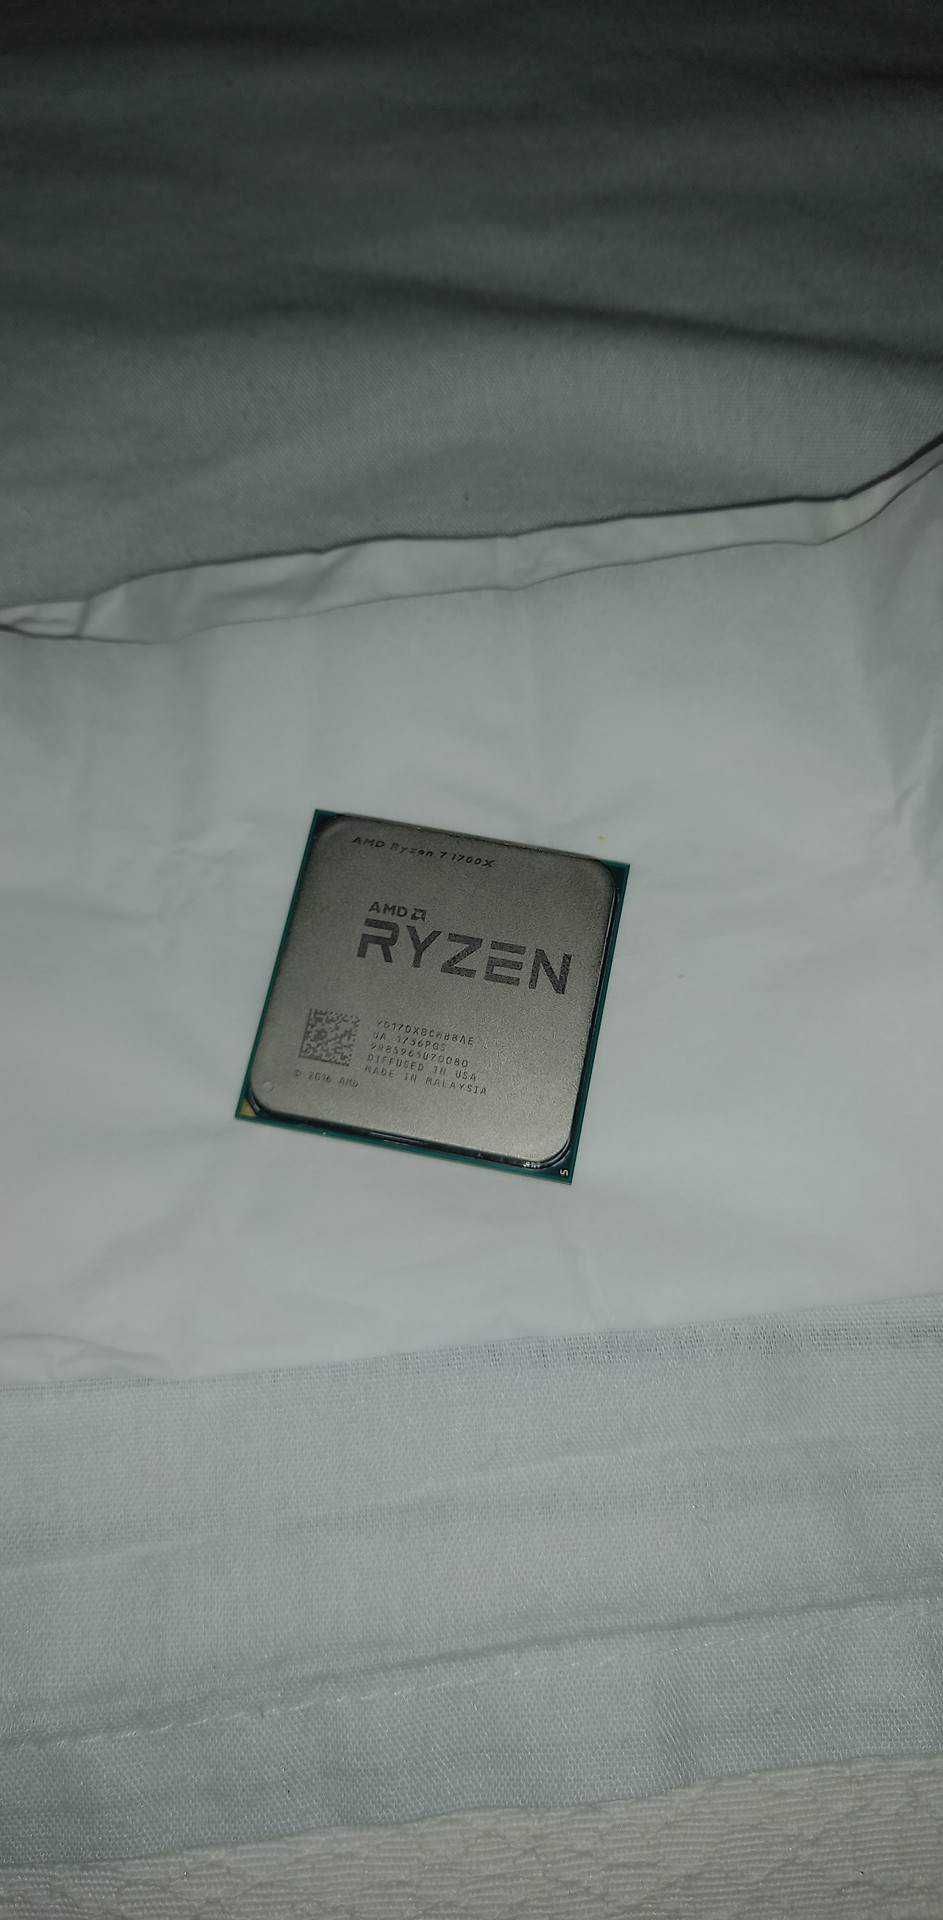 Vand procesor AMD Ryzen 7 1700x